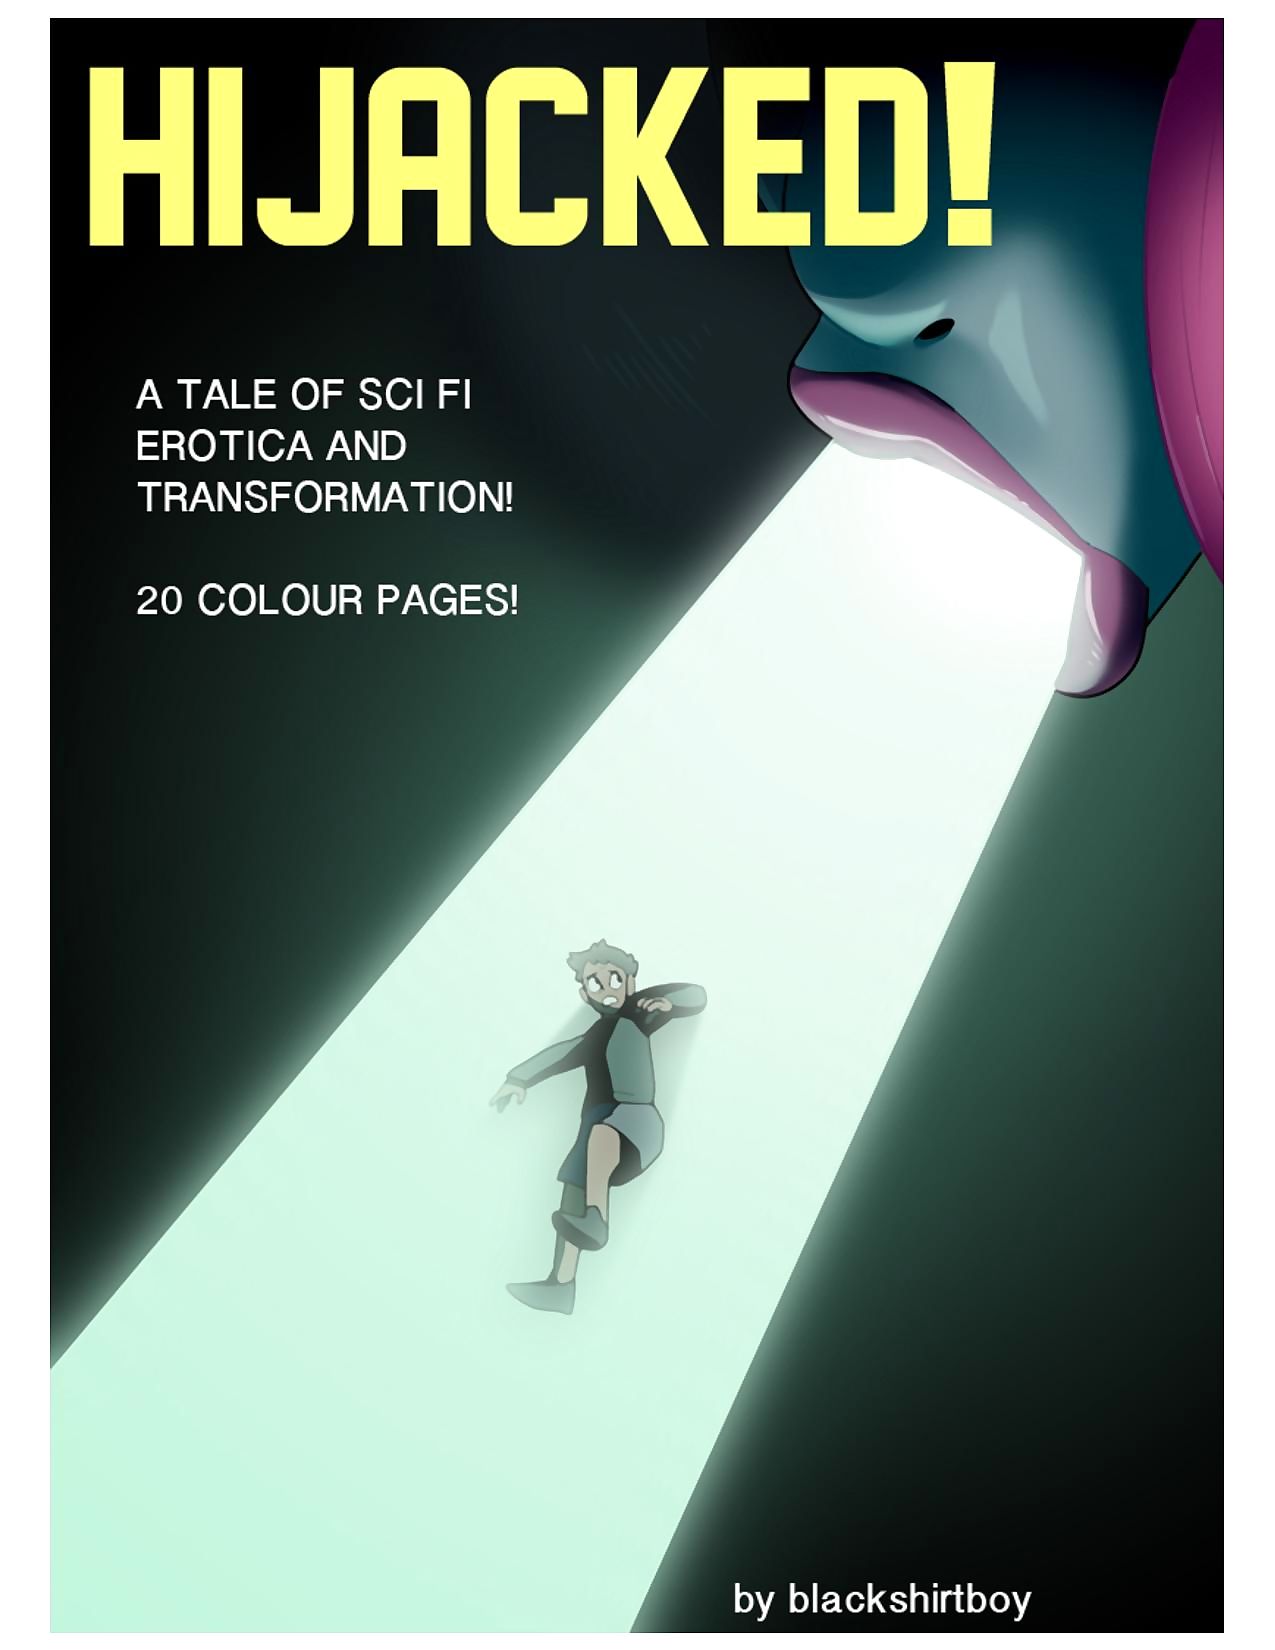 Hijacked- Blackshirtboy page 1